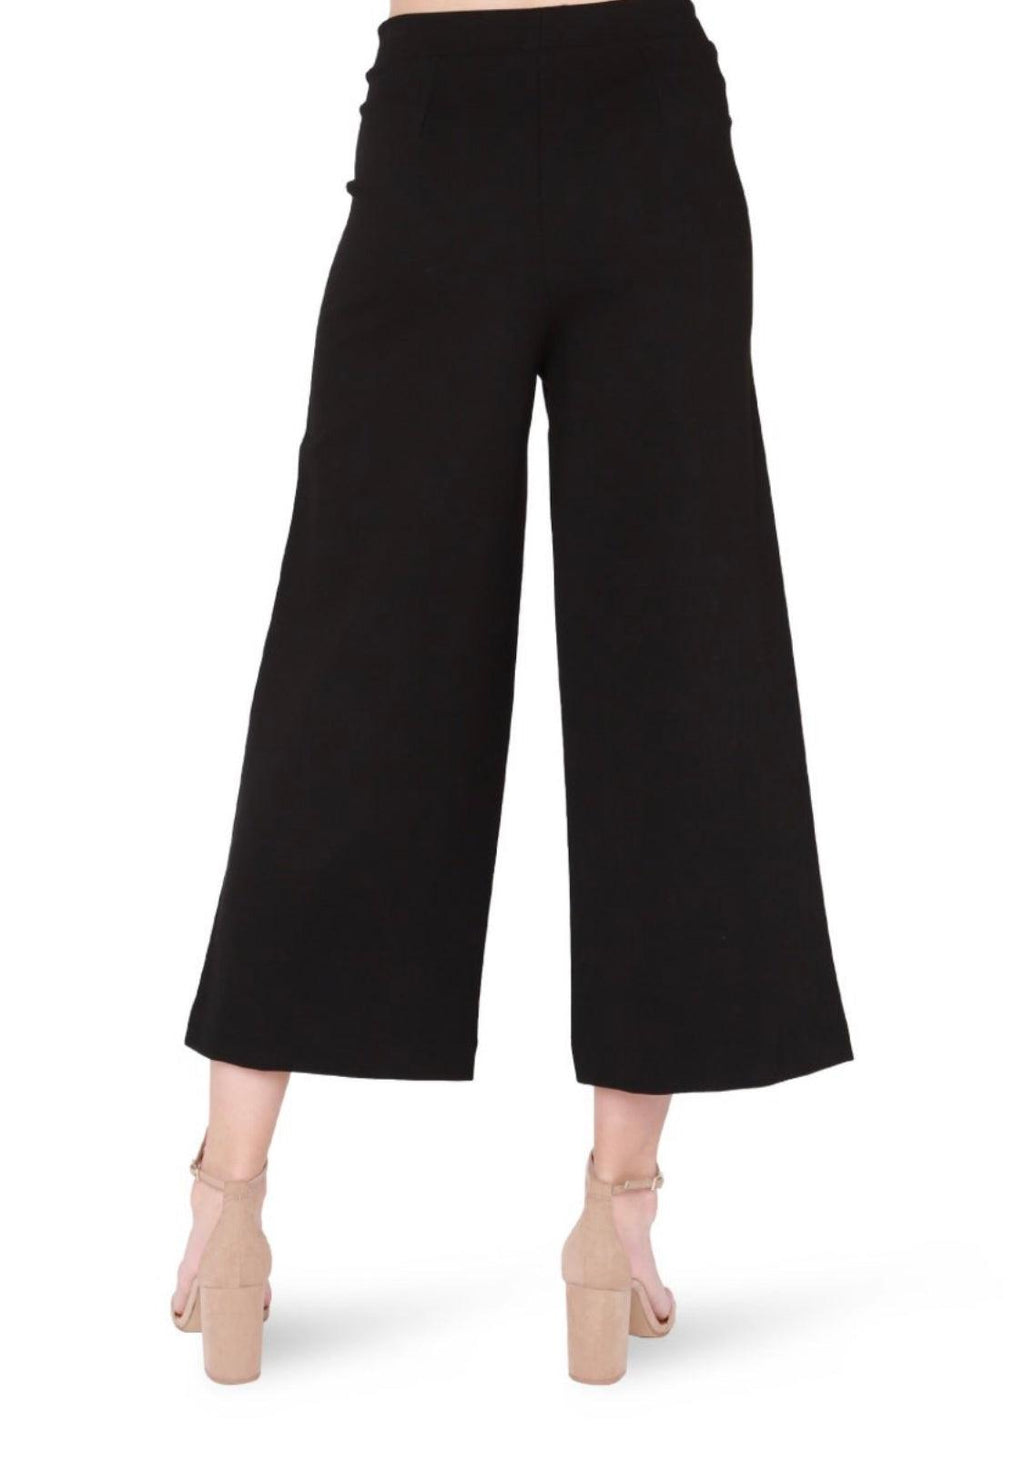 Wide Leg Black Ponte Cropped Pants-160 Bottoms-Black Pants, Elastic Waist Wide Leg Pants, Max Retail, Ponte Pants, Wide Leg Pants-[option4]-[option5]-[option6]-Womens-USA-Clothing-Boutique-Shop-Online-Clothes Minded